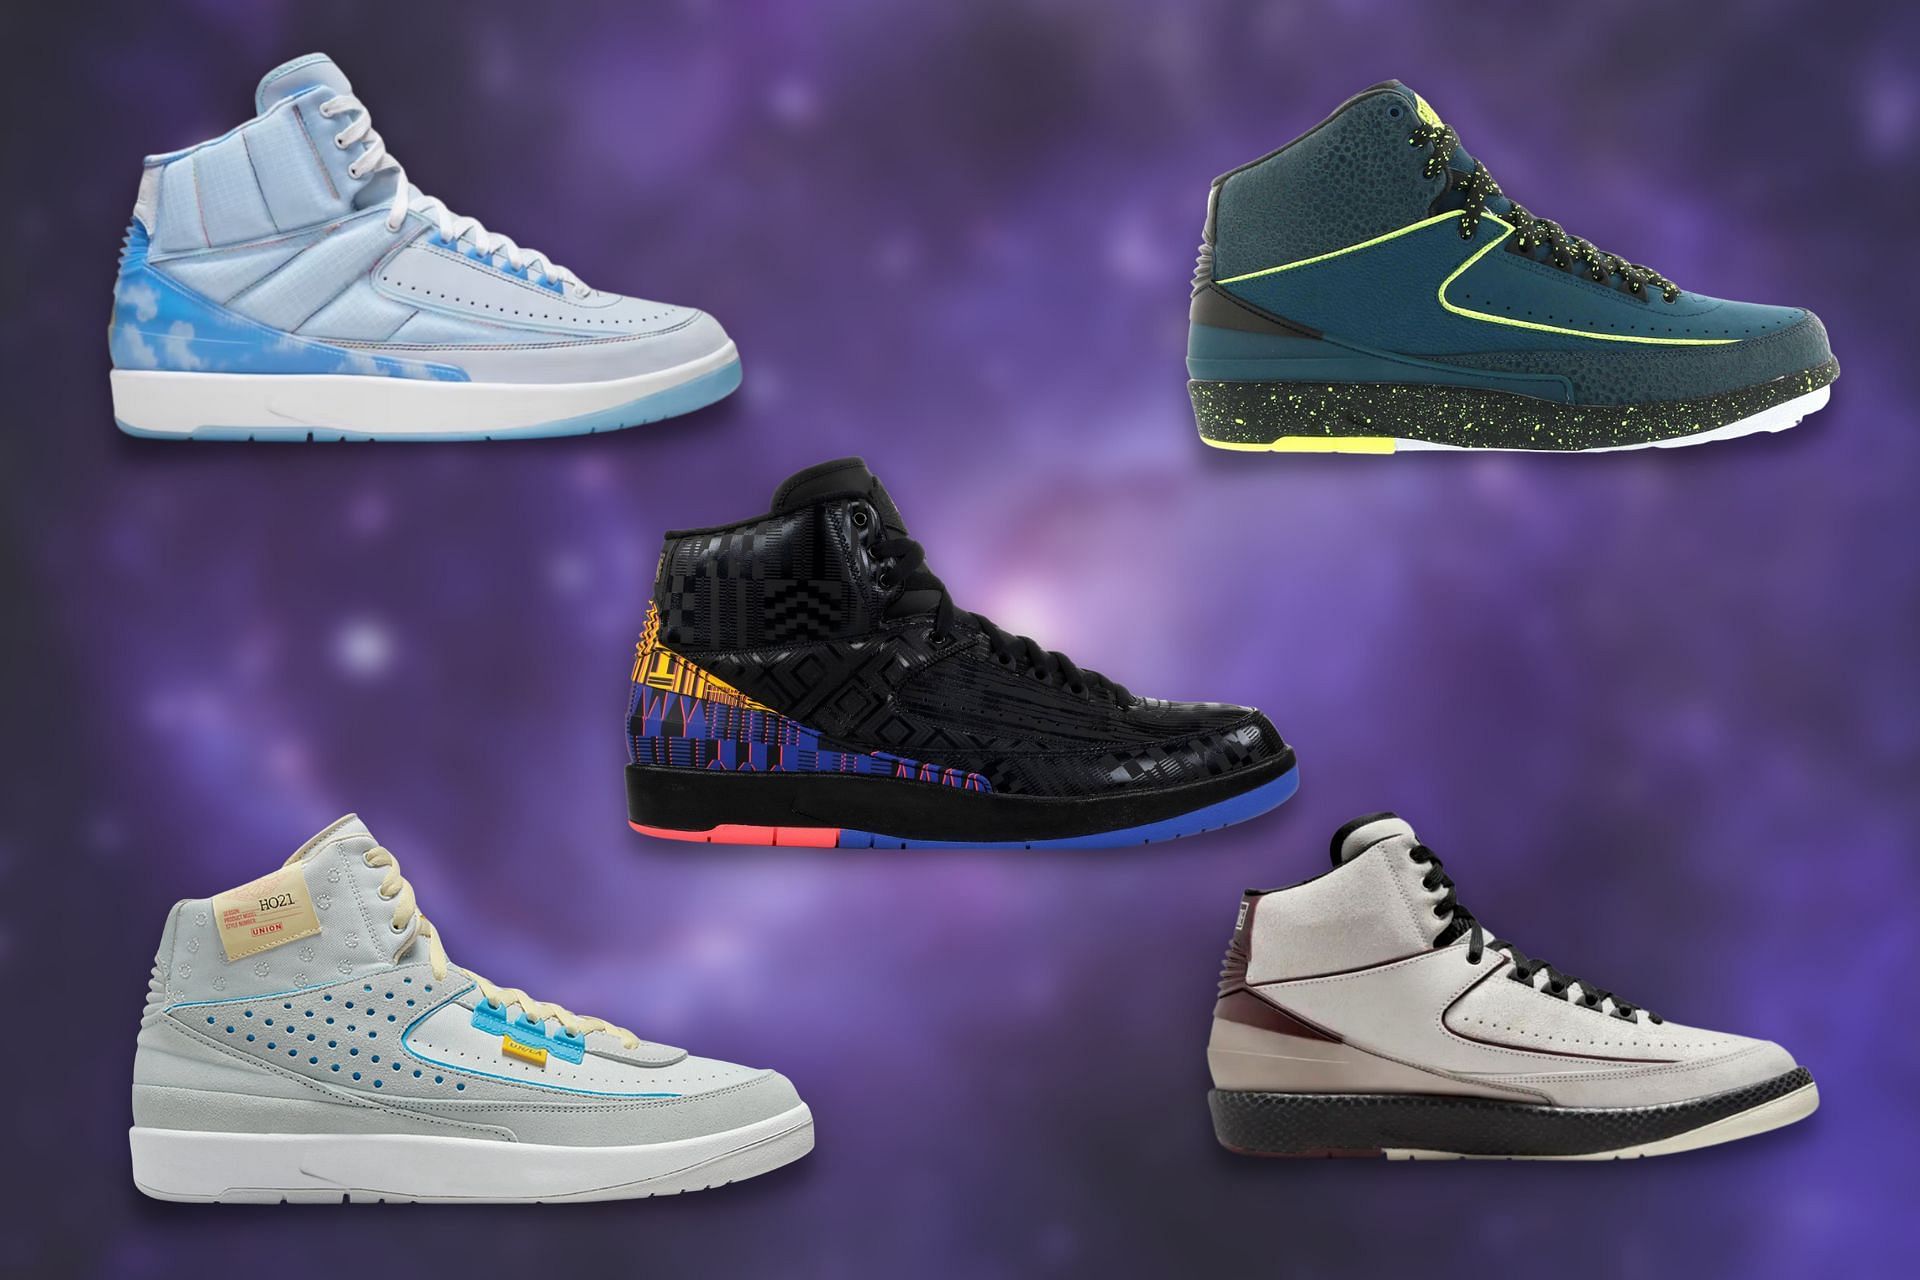 5 best Nike Air Jordan 2 colorways to buy for under $300